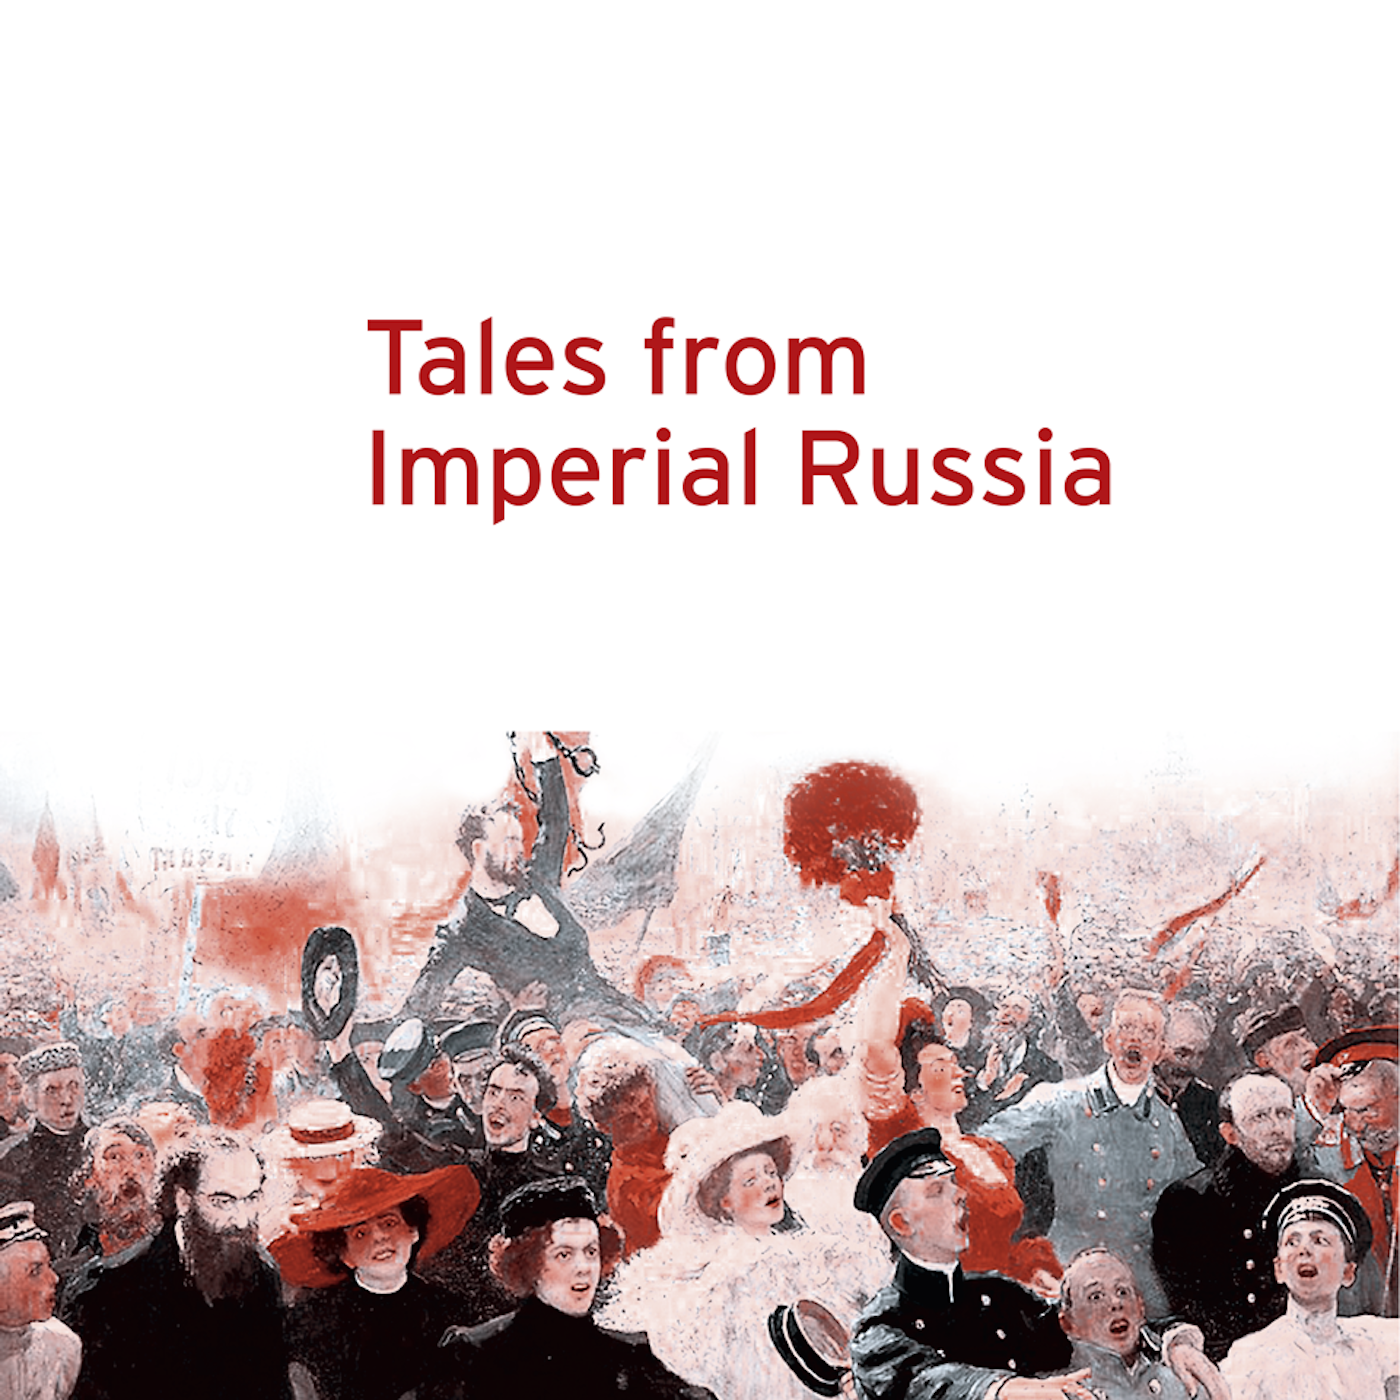 Episode 6: Africa's New Moscow. The Tale of Nikolai Ashinov